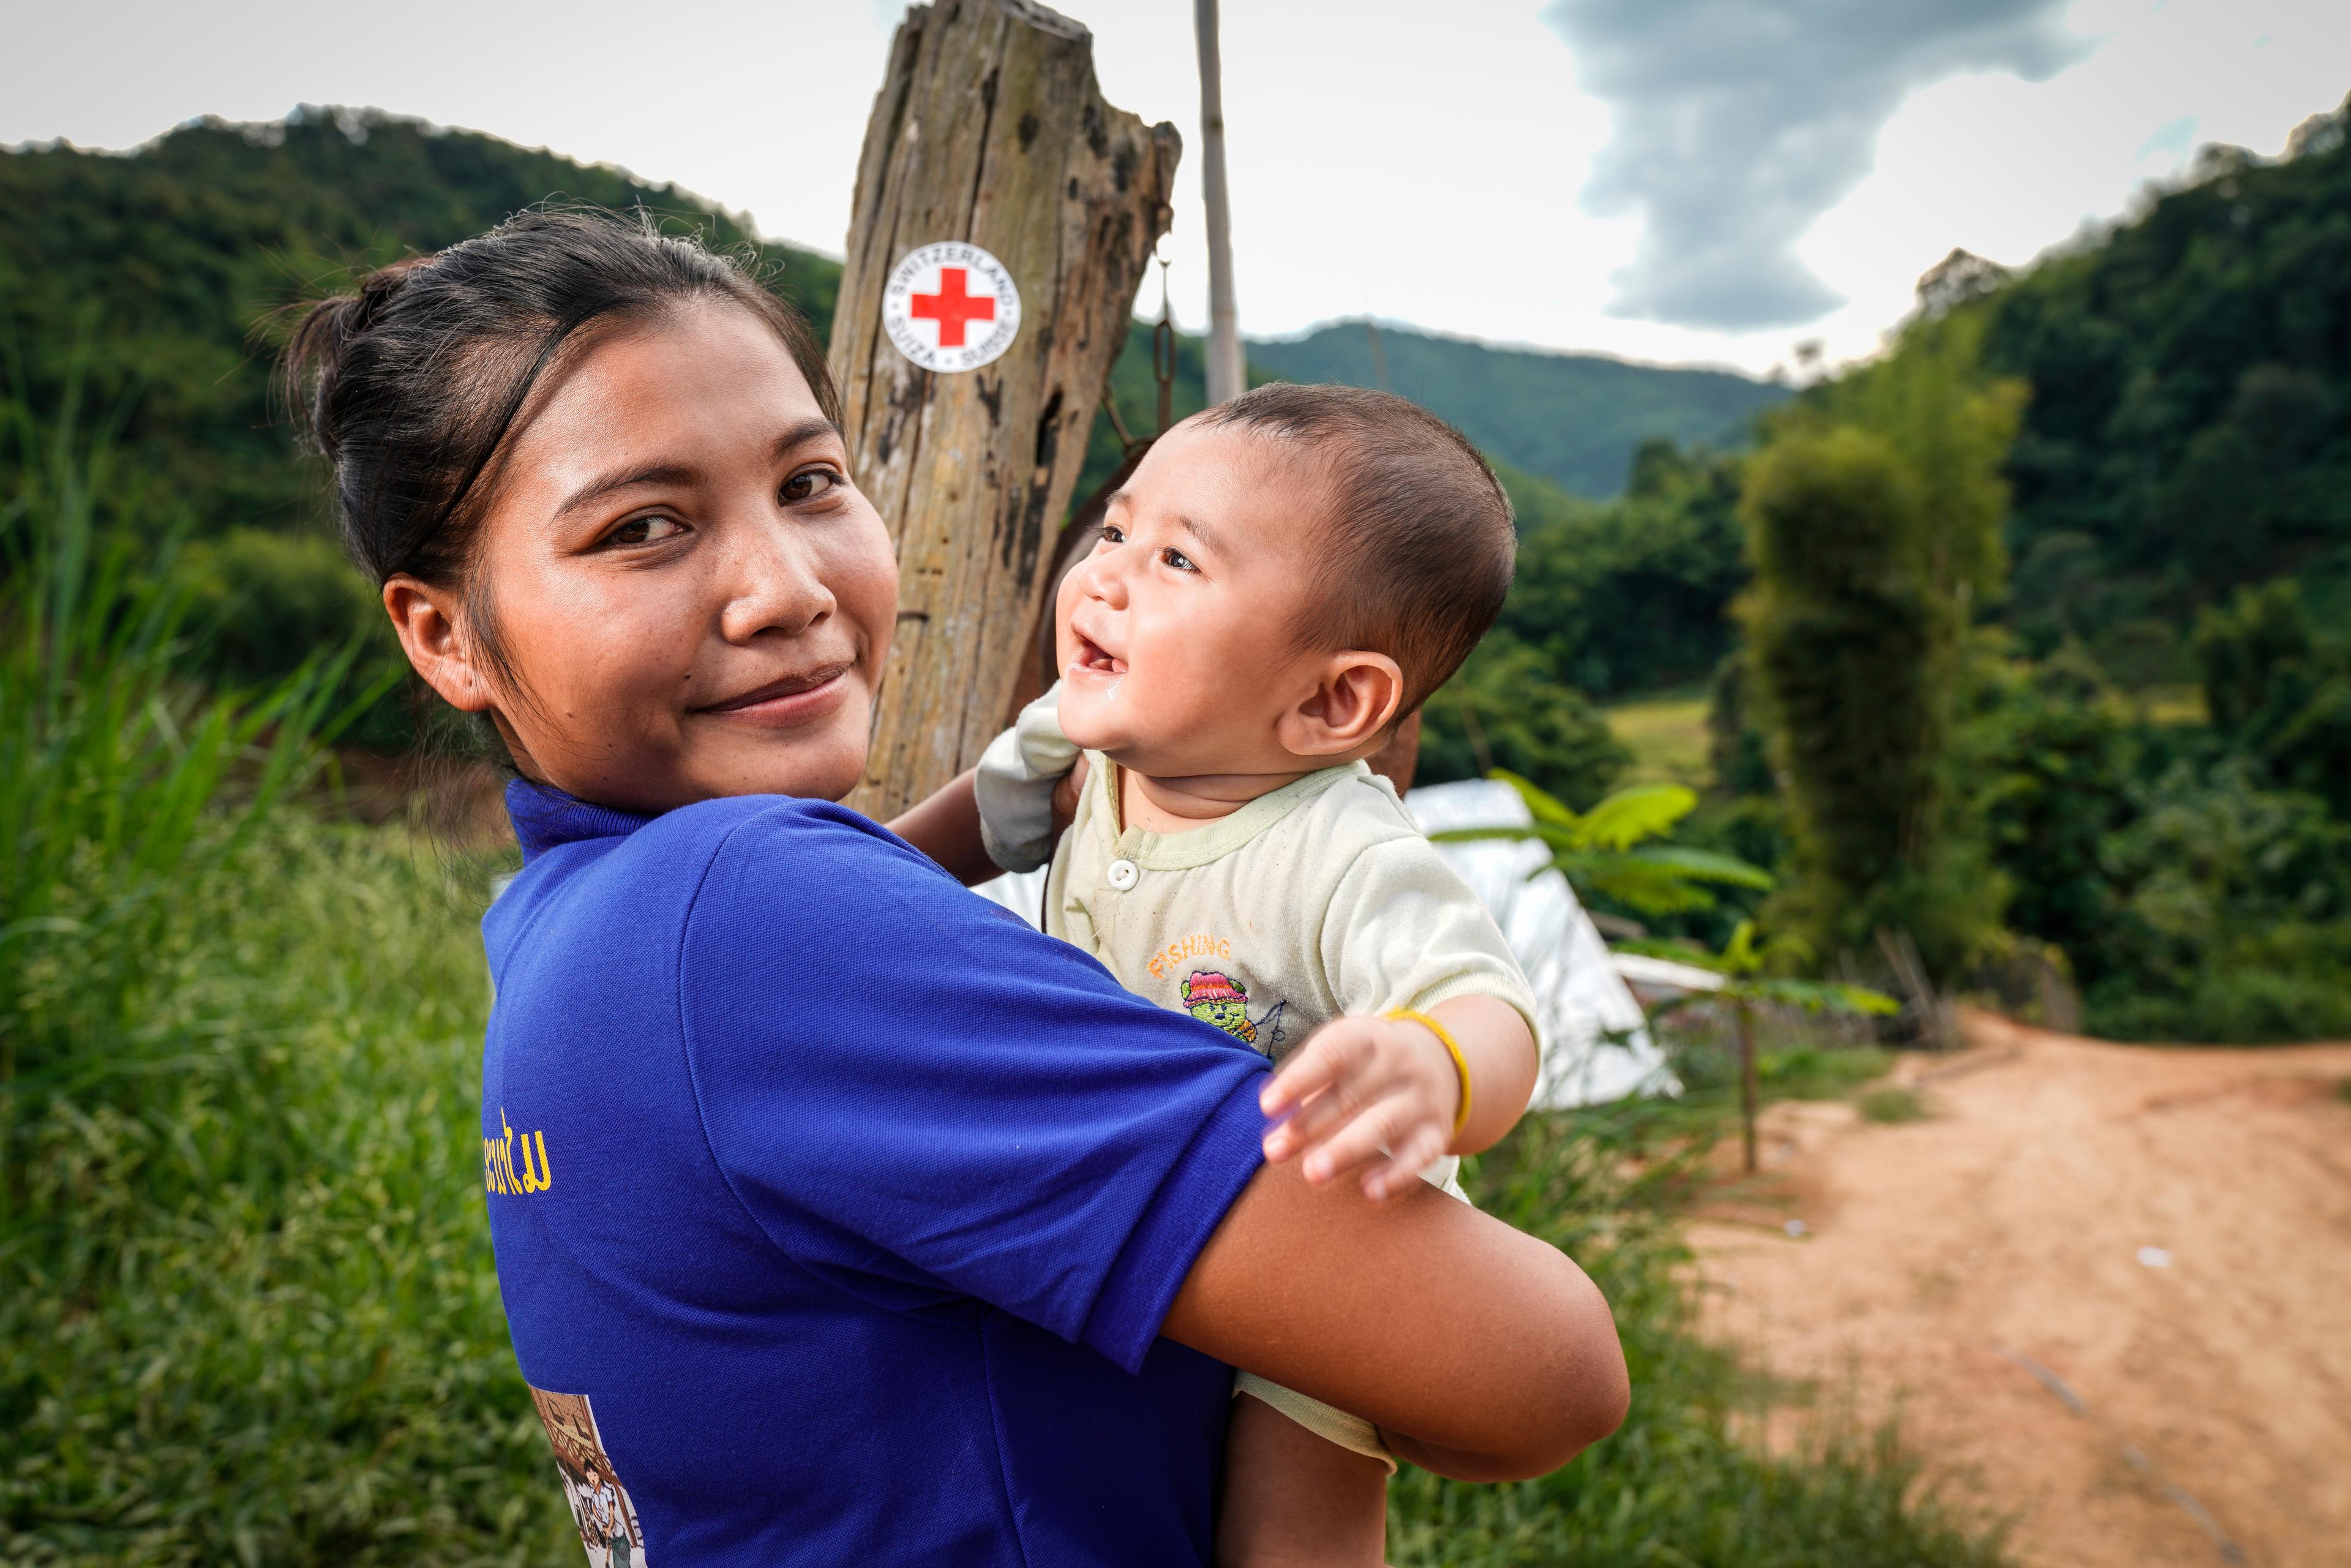 Une bénévole de la Croix-Rouge avec un bébé dans les bras qui lui sourit. Dans le district de Phonexay, province de Luang Prabang, Laos